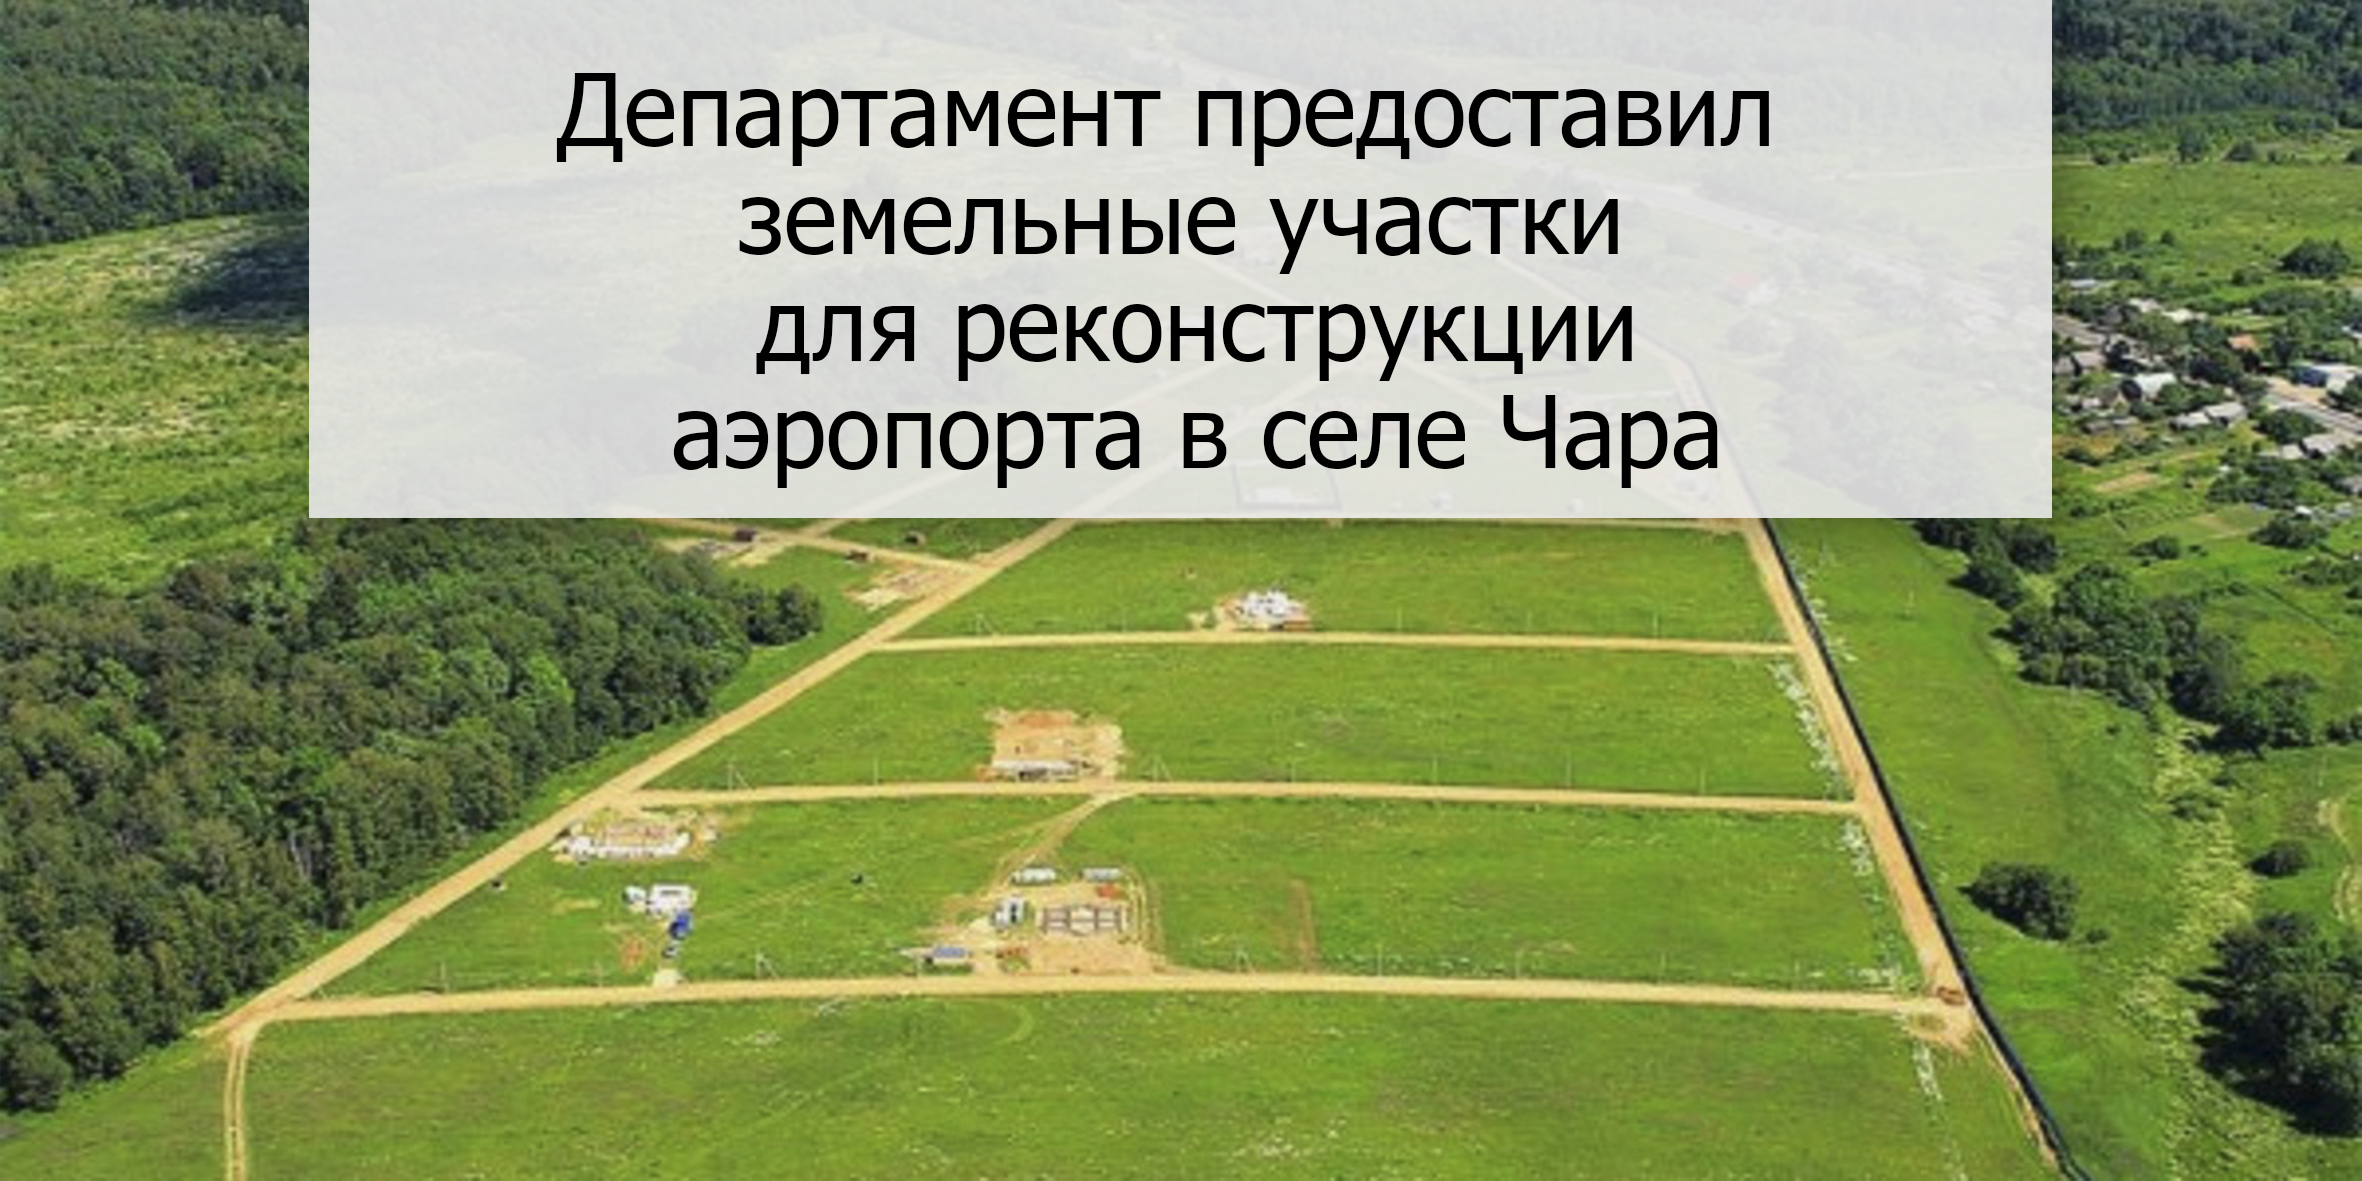 Департамент предоставил земельные участки для реконструкции аэропорта в селе Чара